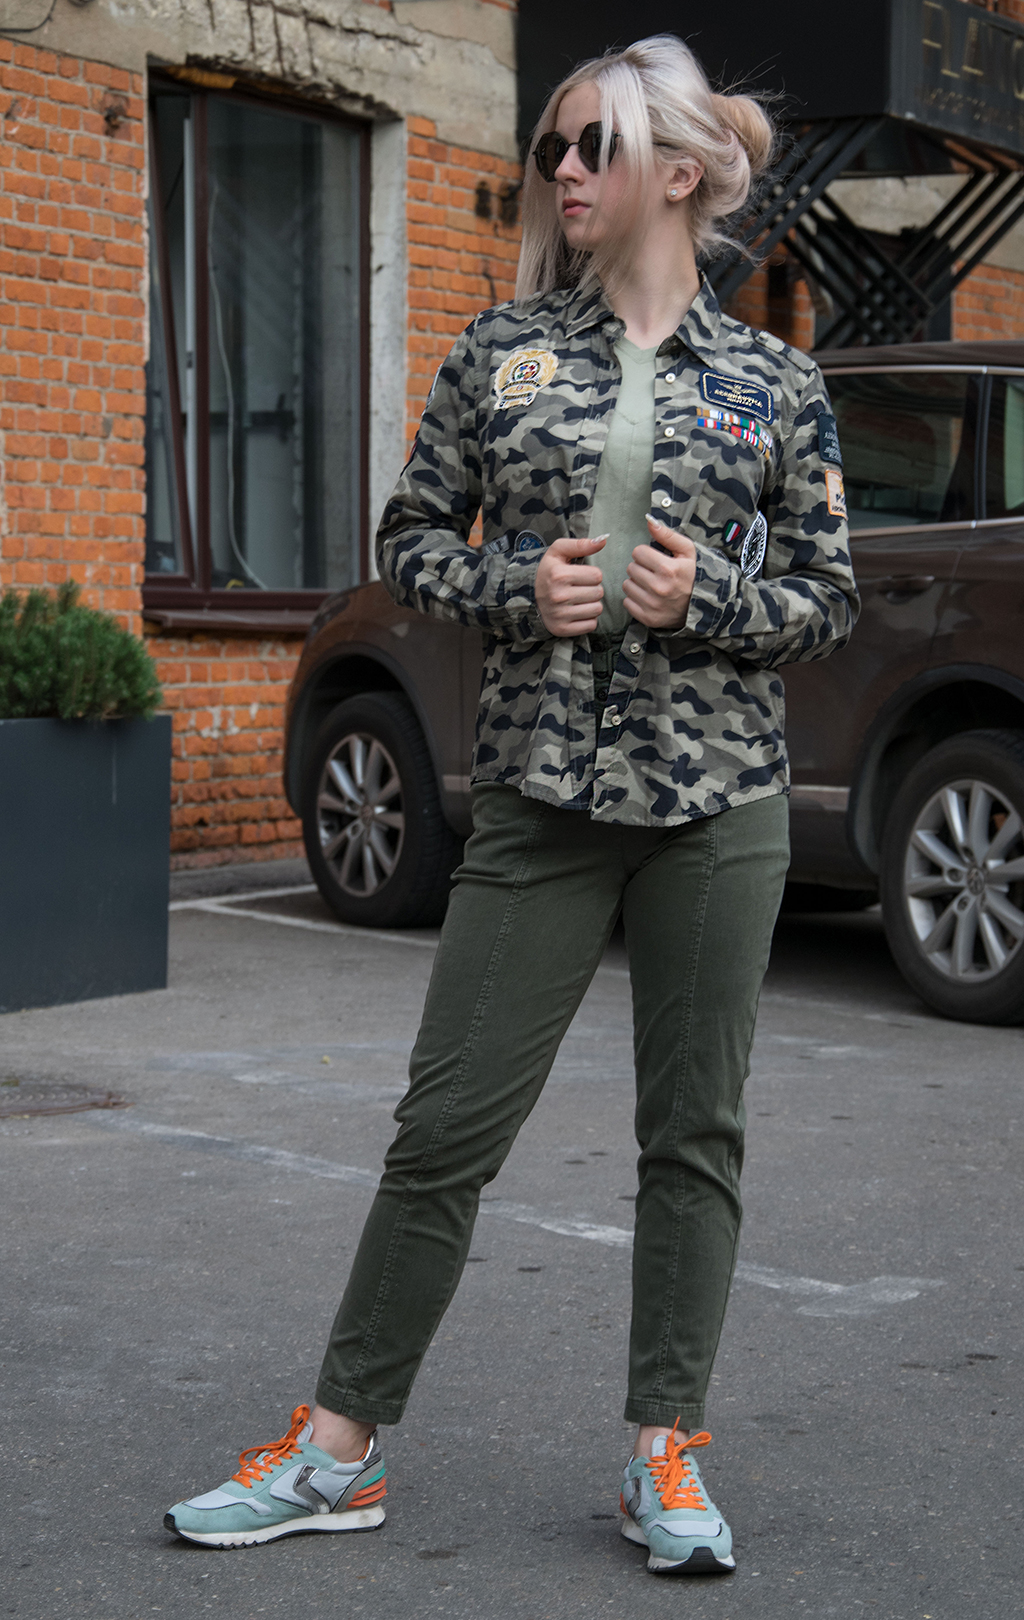 Женская рубашка AERONAUTICA MILITARE SS 20/IN camouflage verde militare (CA 1152) 